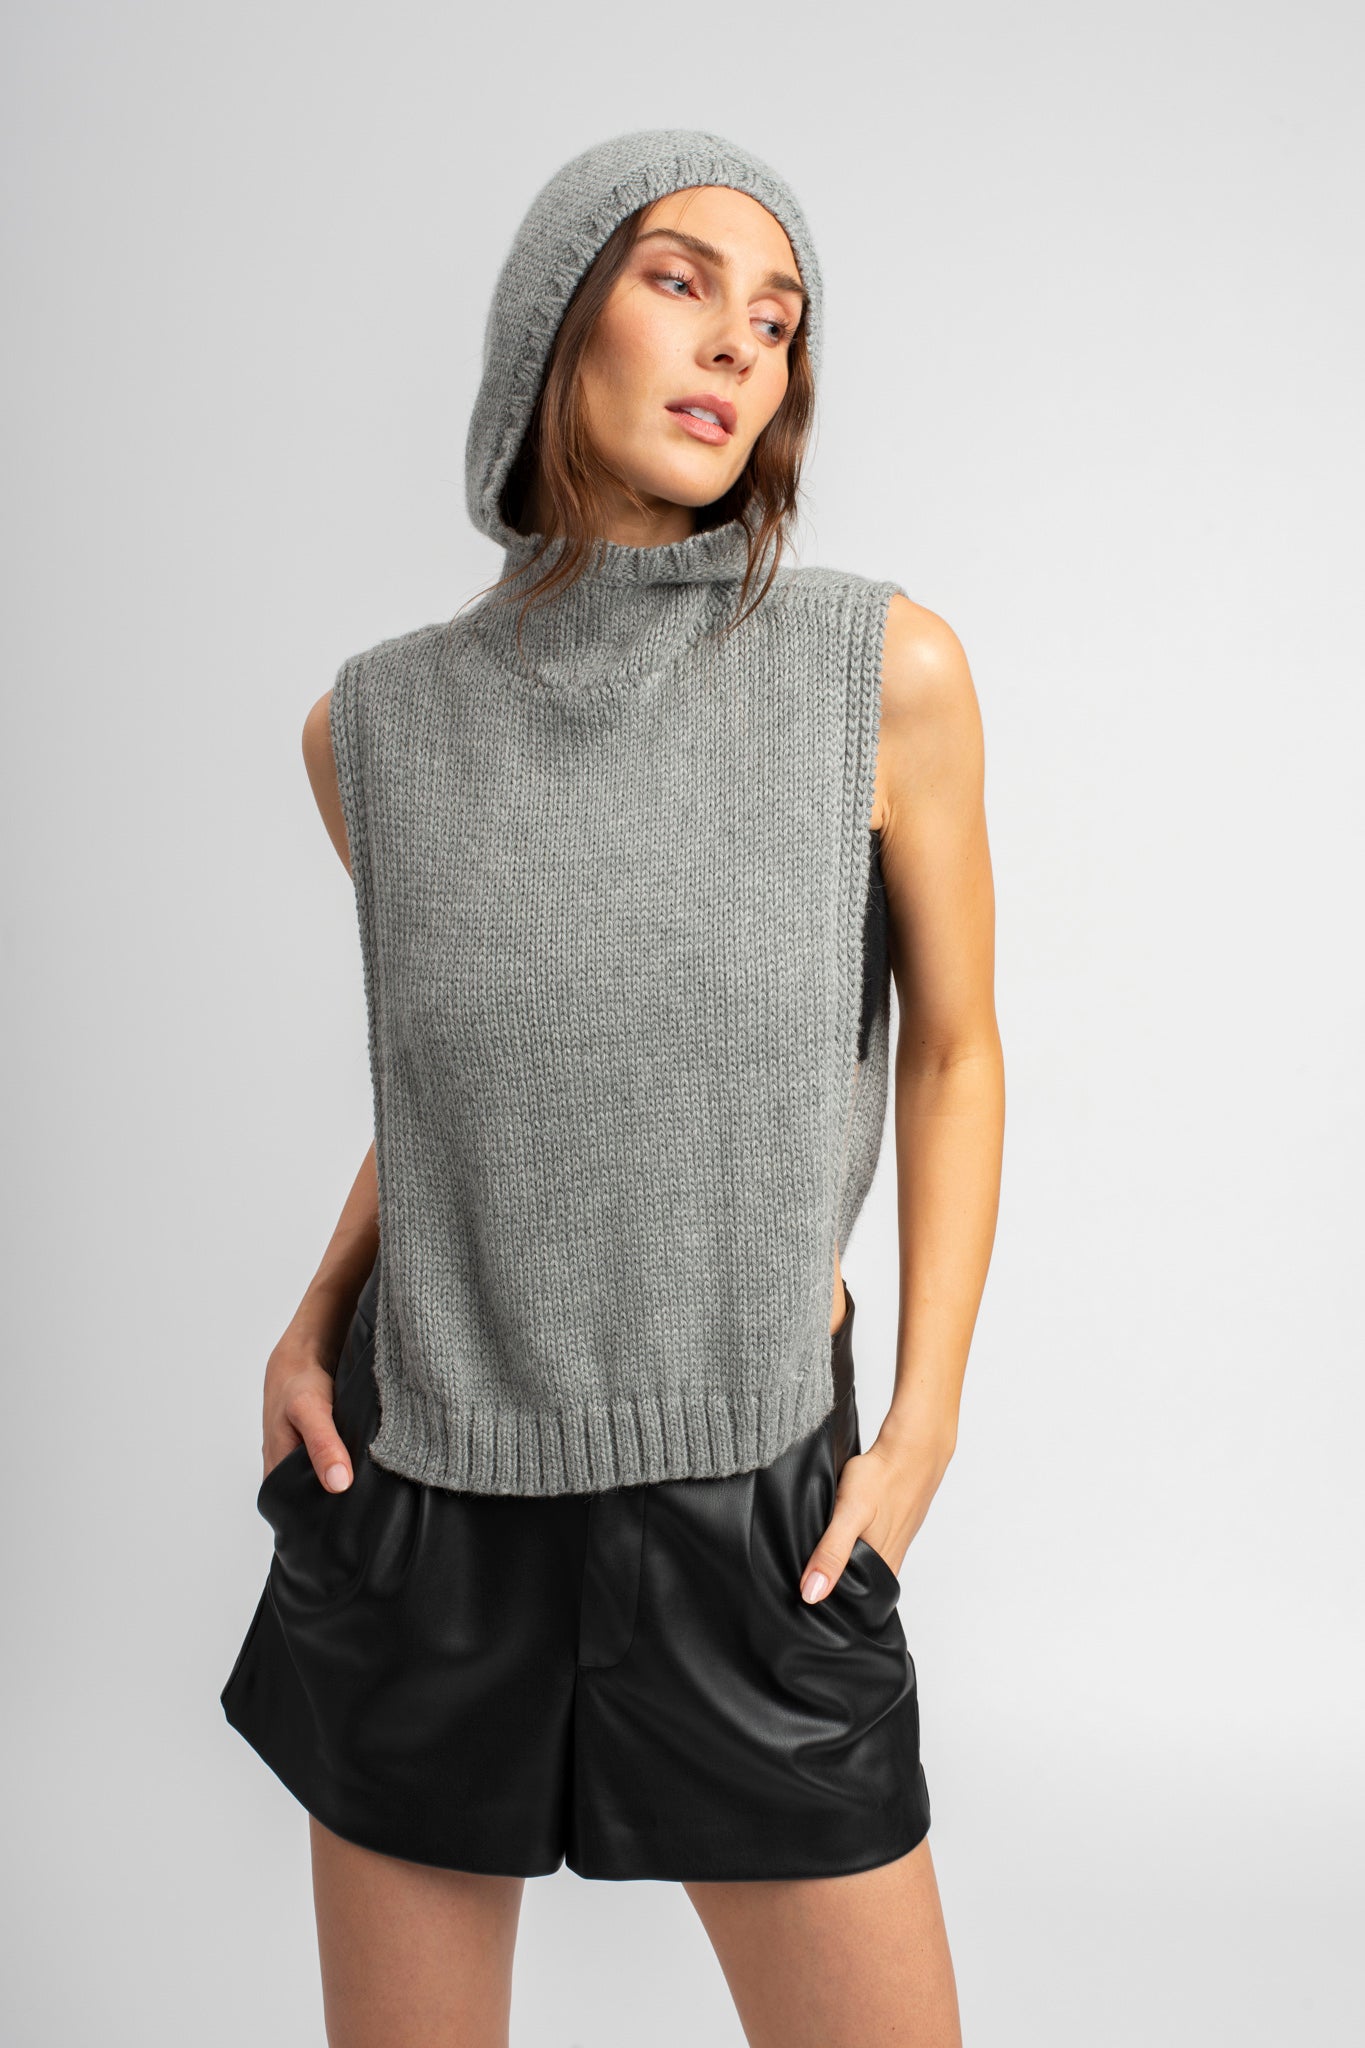 Model wearing poncho in light grey alpaca wool, front